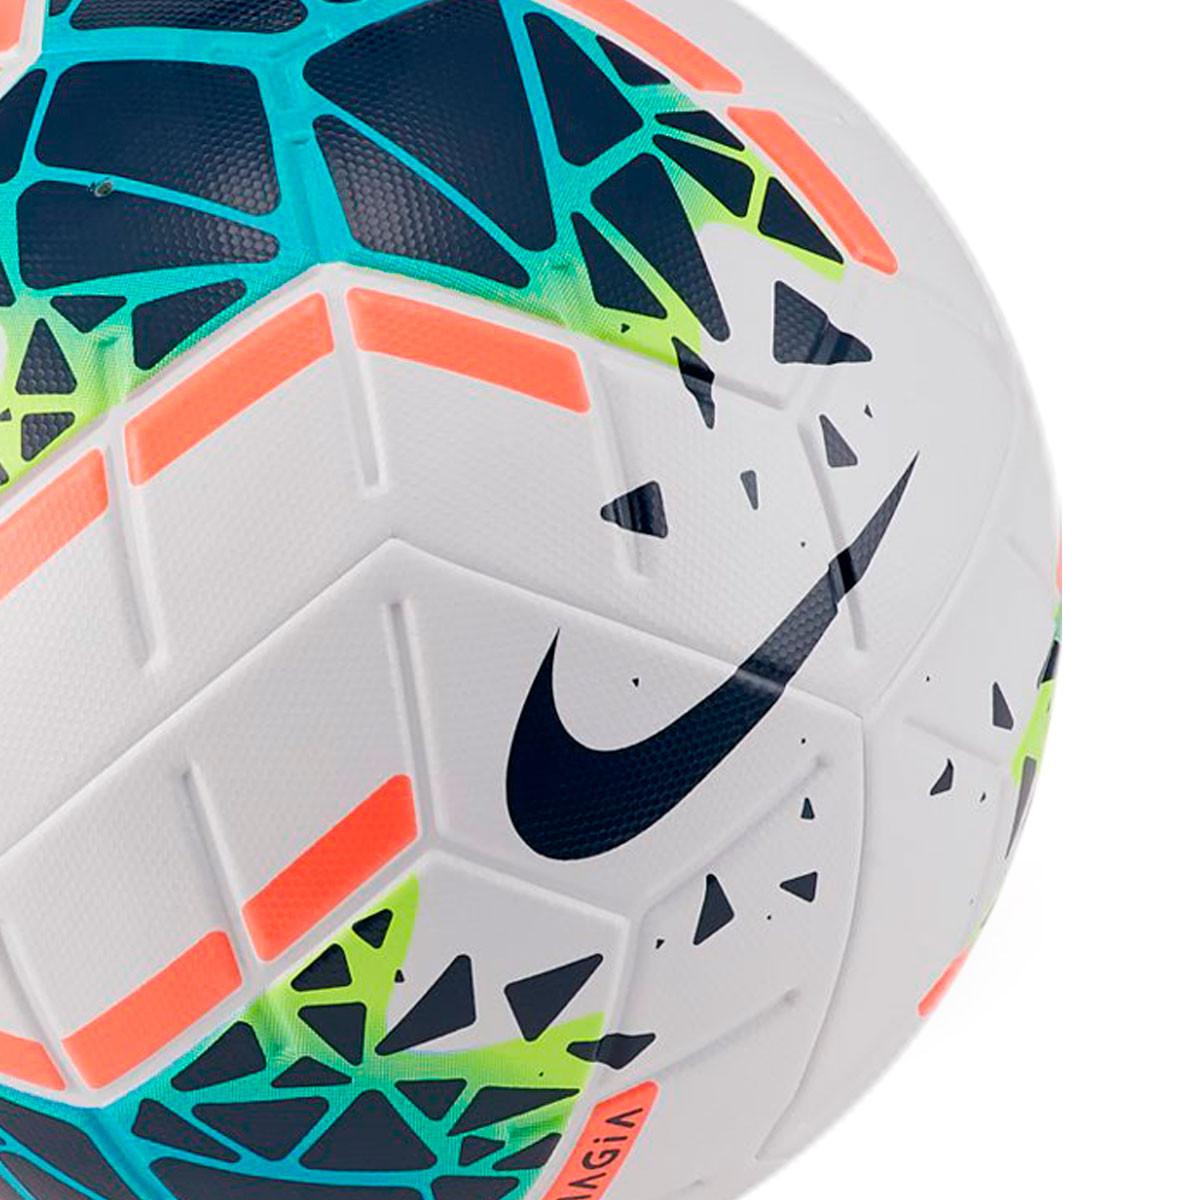 Ball Nike Magia 2019-2020 White-Obsidian-Blue hero - Football store Fútbol  Emotion